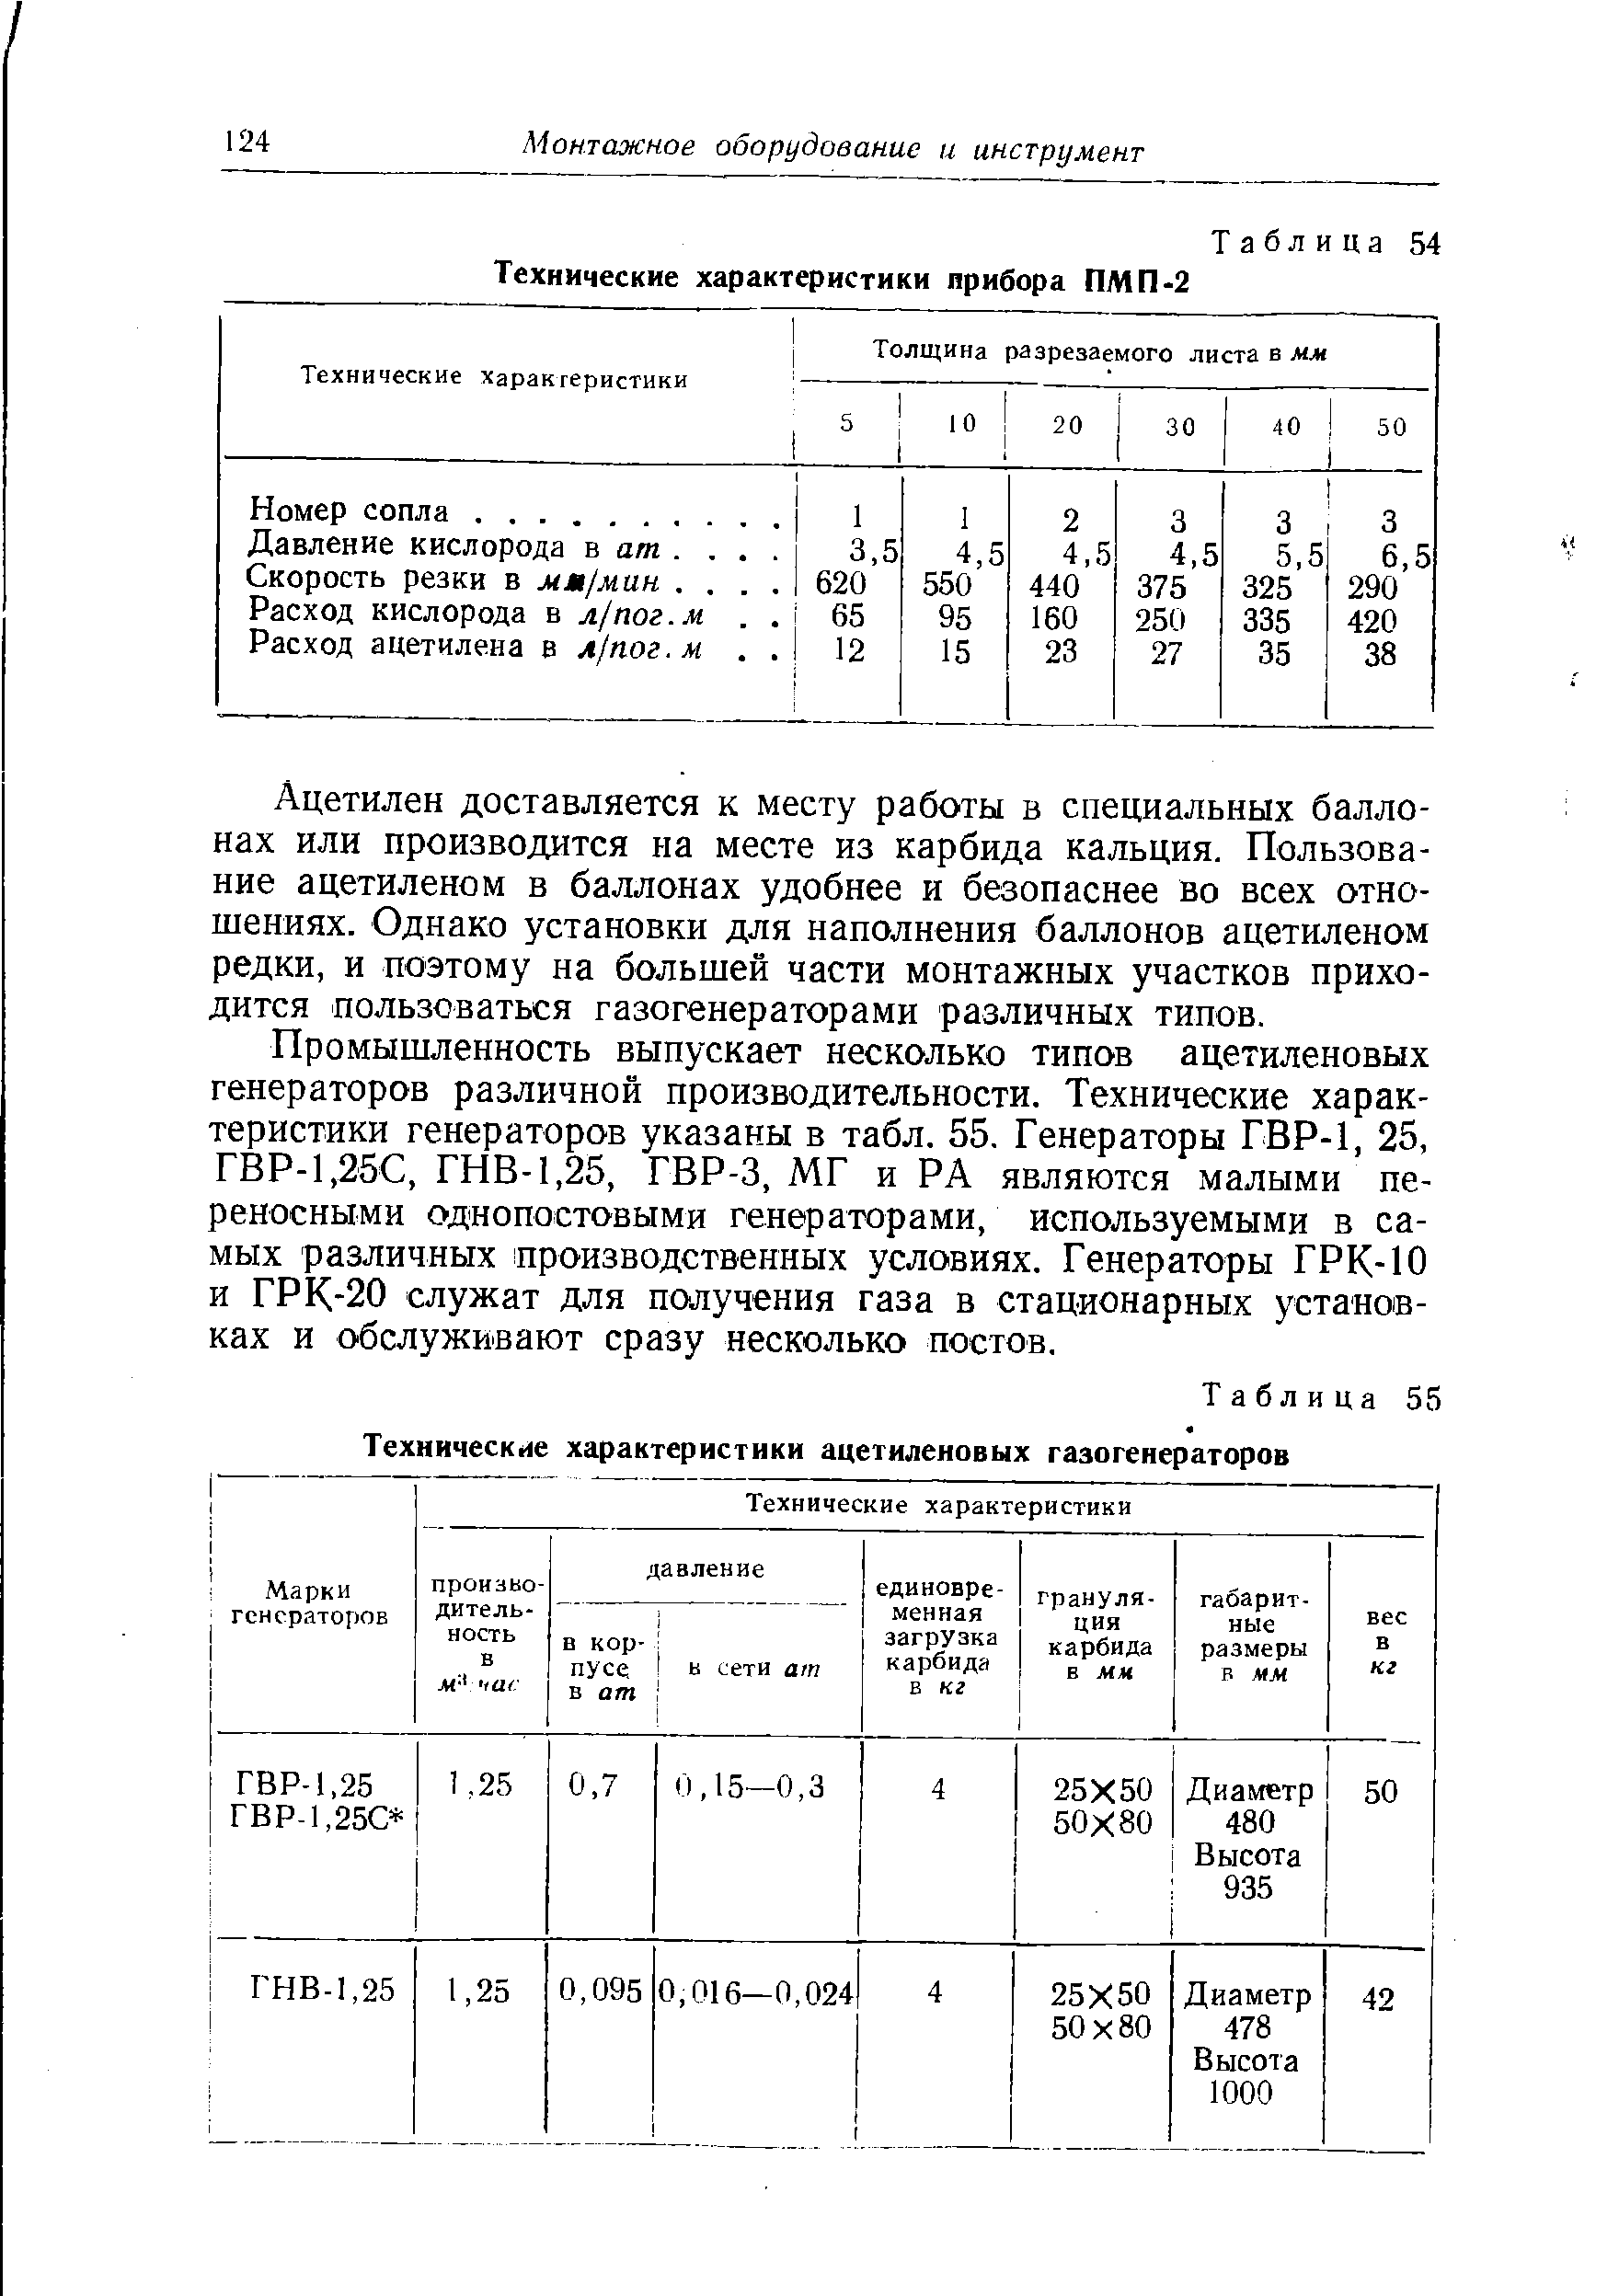 Таблица 55 Технические характеристики ацетиленовых газогенераторов
